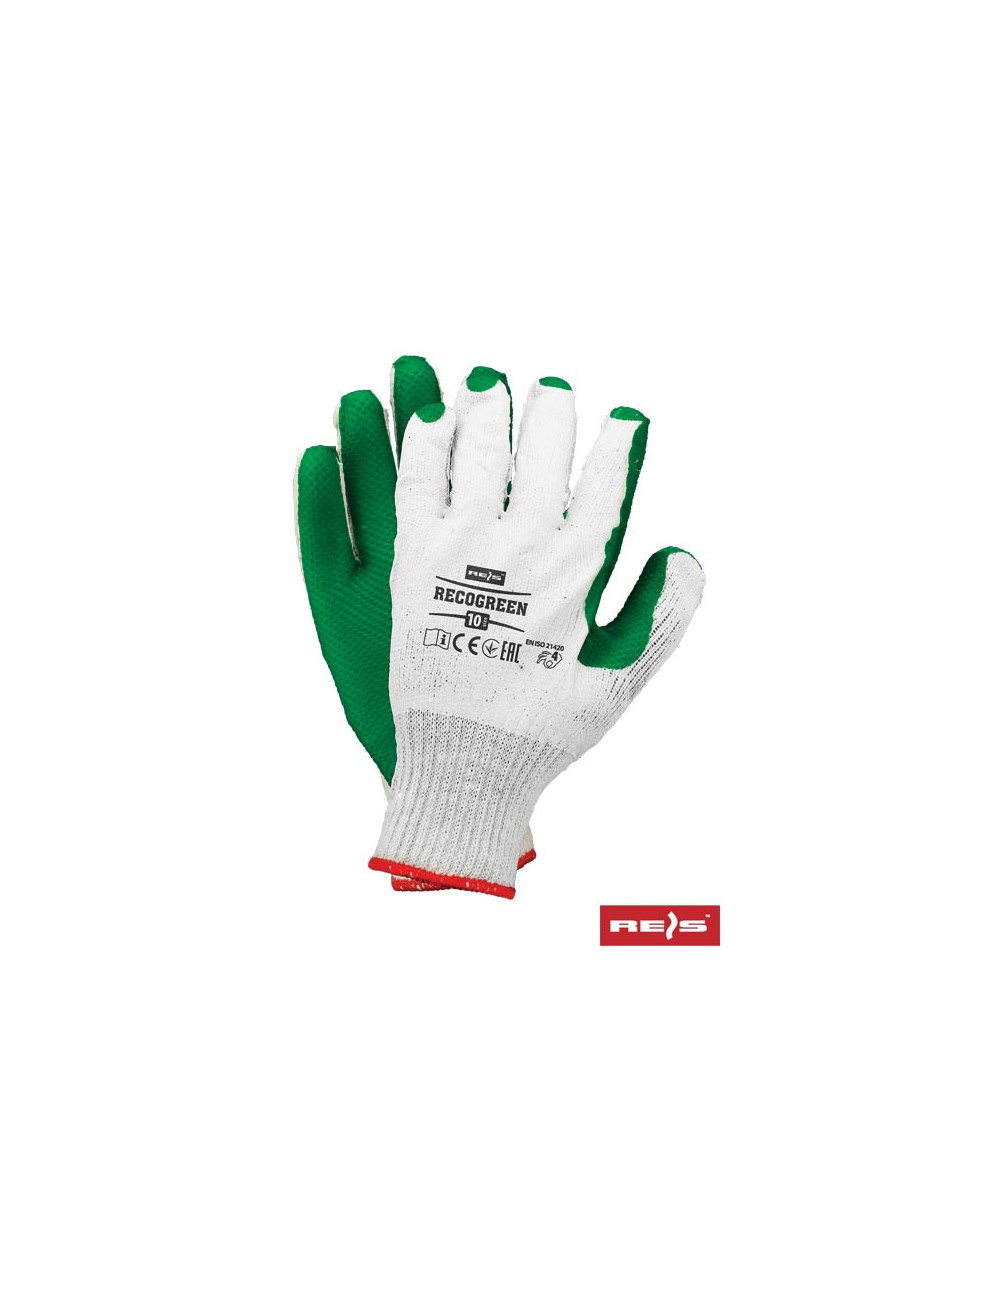 Protective gloves recogreen wz white-green Reis